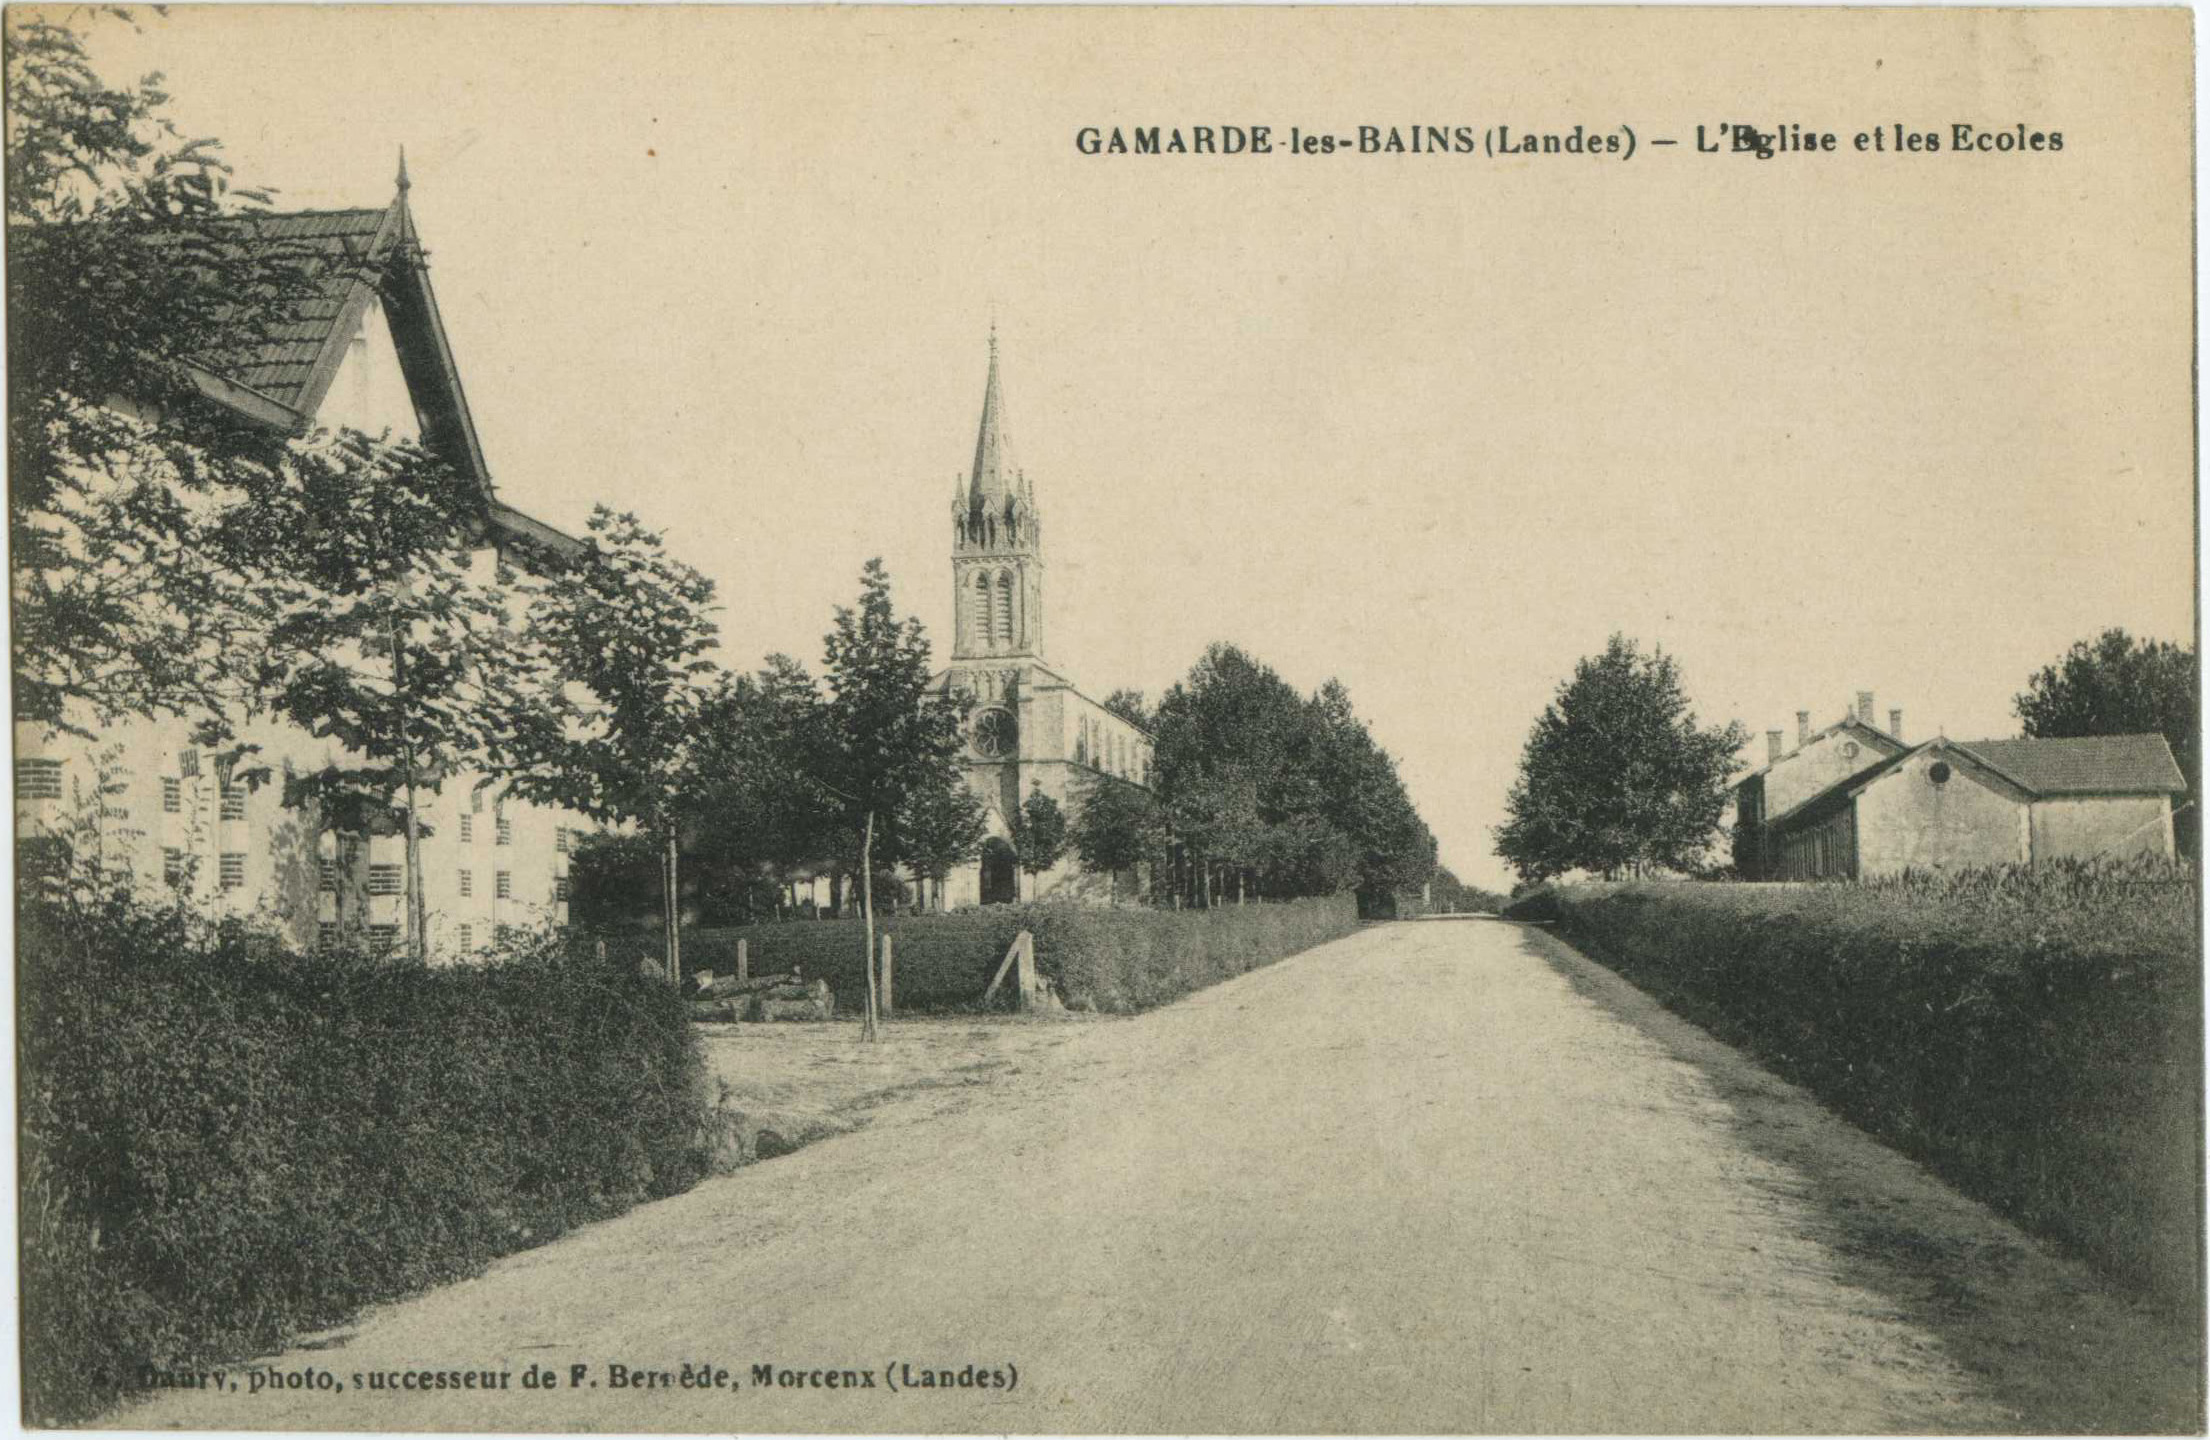 Gamarde-les-Bains - L'Eglise et les Ecoles